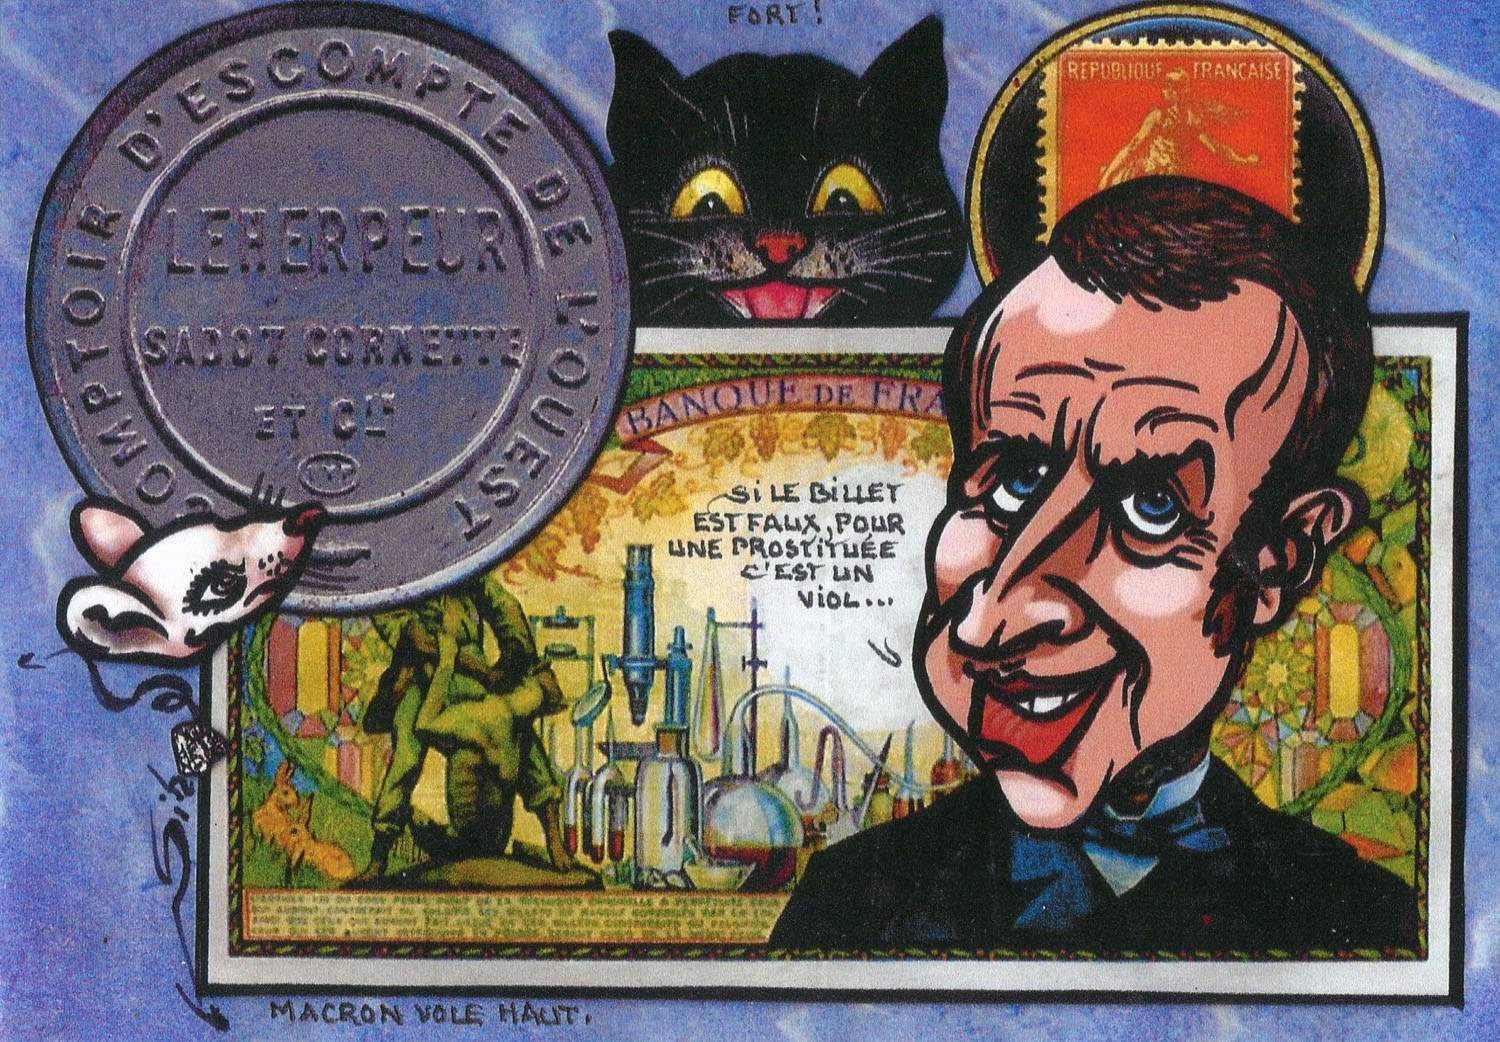 Exemple 248 de carte postale signée Jacques Lardie dit Jihel utilisant le timbre-monnaie Comptoir d'Escompte de l'Ouest - Leherpeur Sadot Cornette et Cie comme illustration